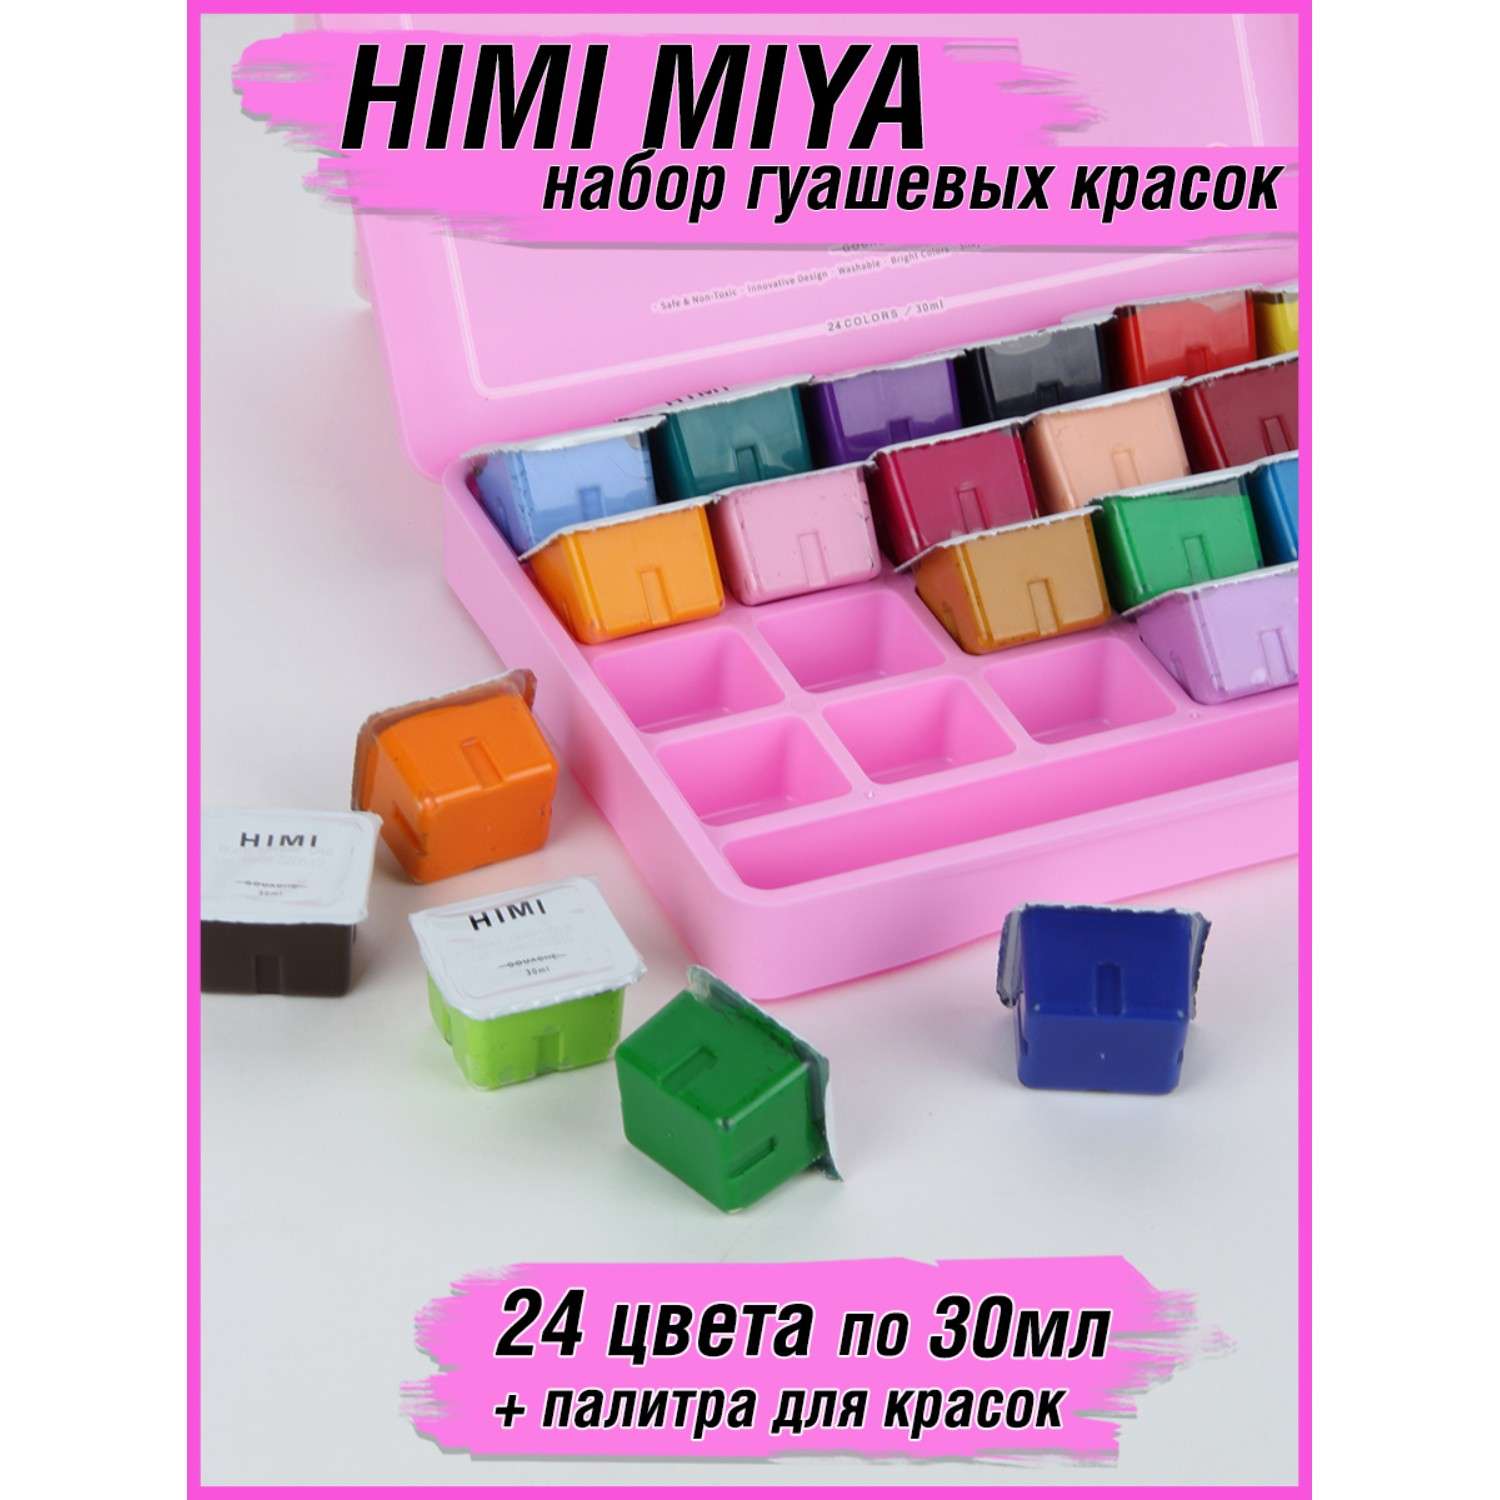 Набор гуашевых красок HIMI MIYA розовый кейс 24 цвета - фото 2